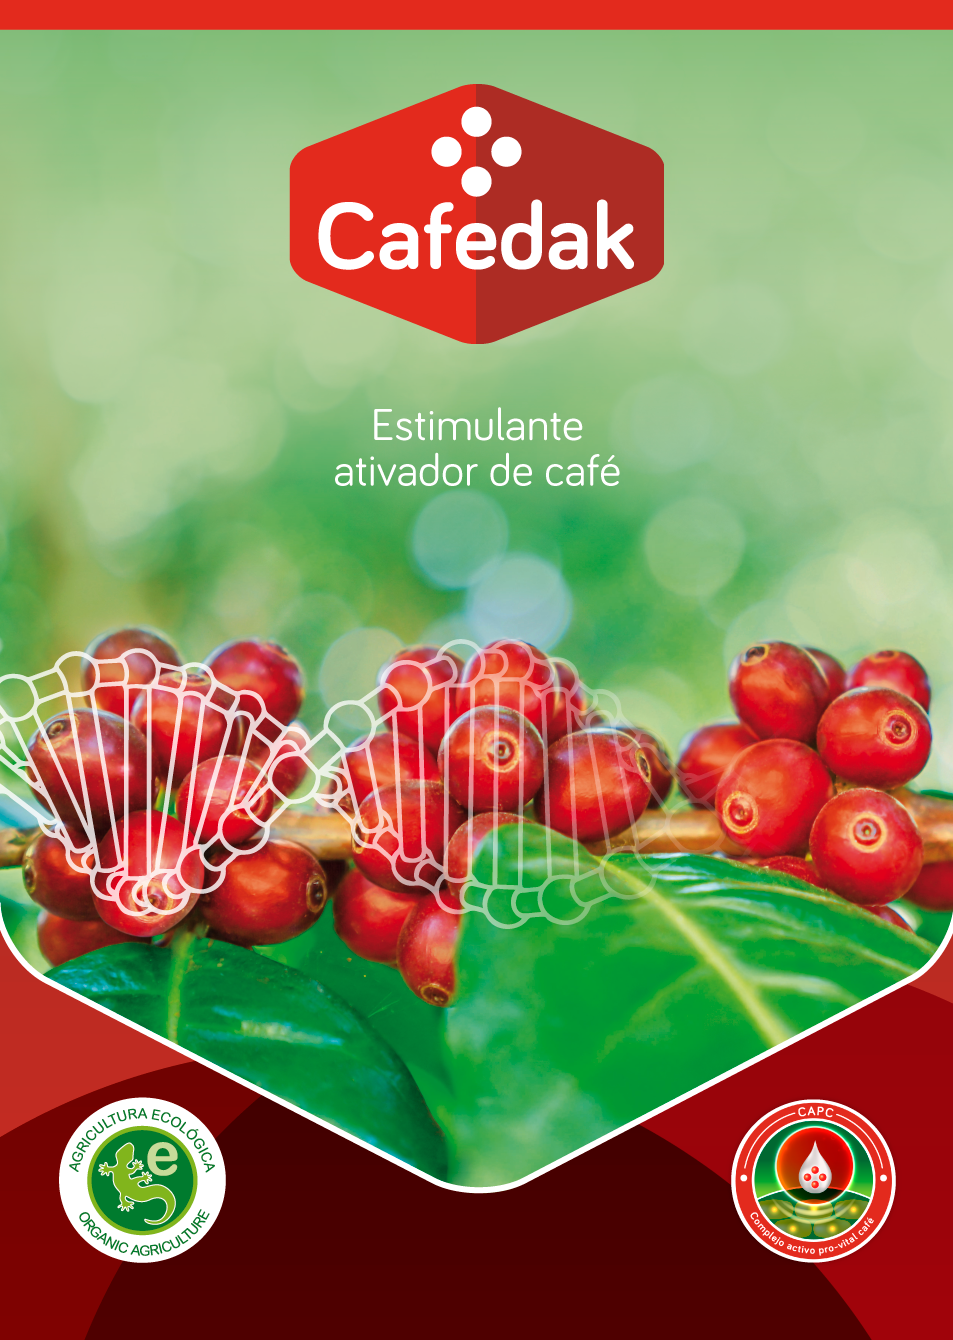 Cafedak: Estimulante ativador de café